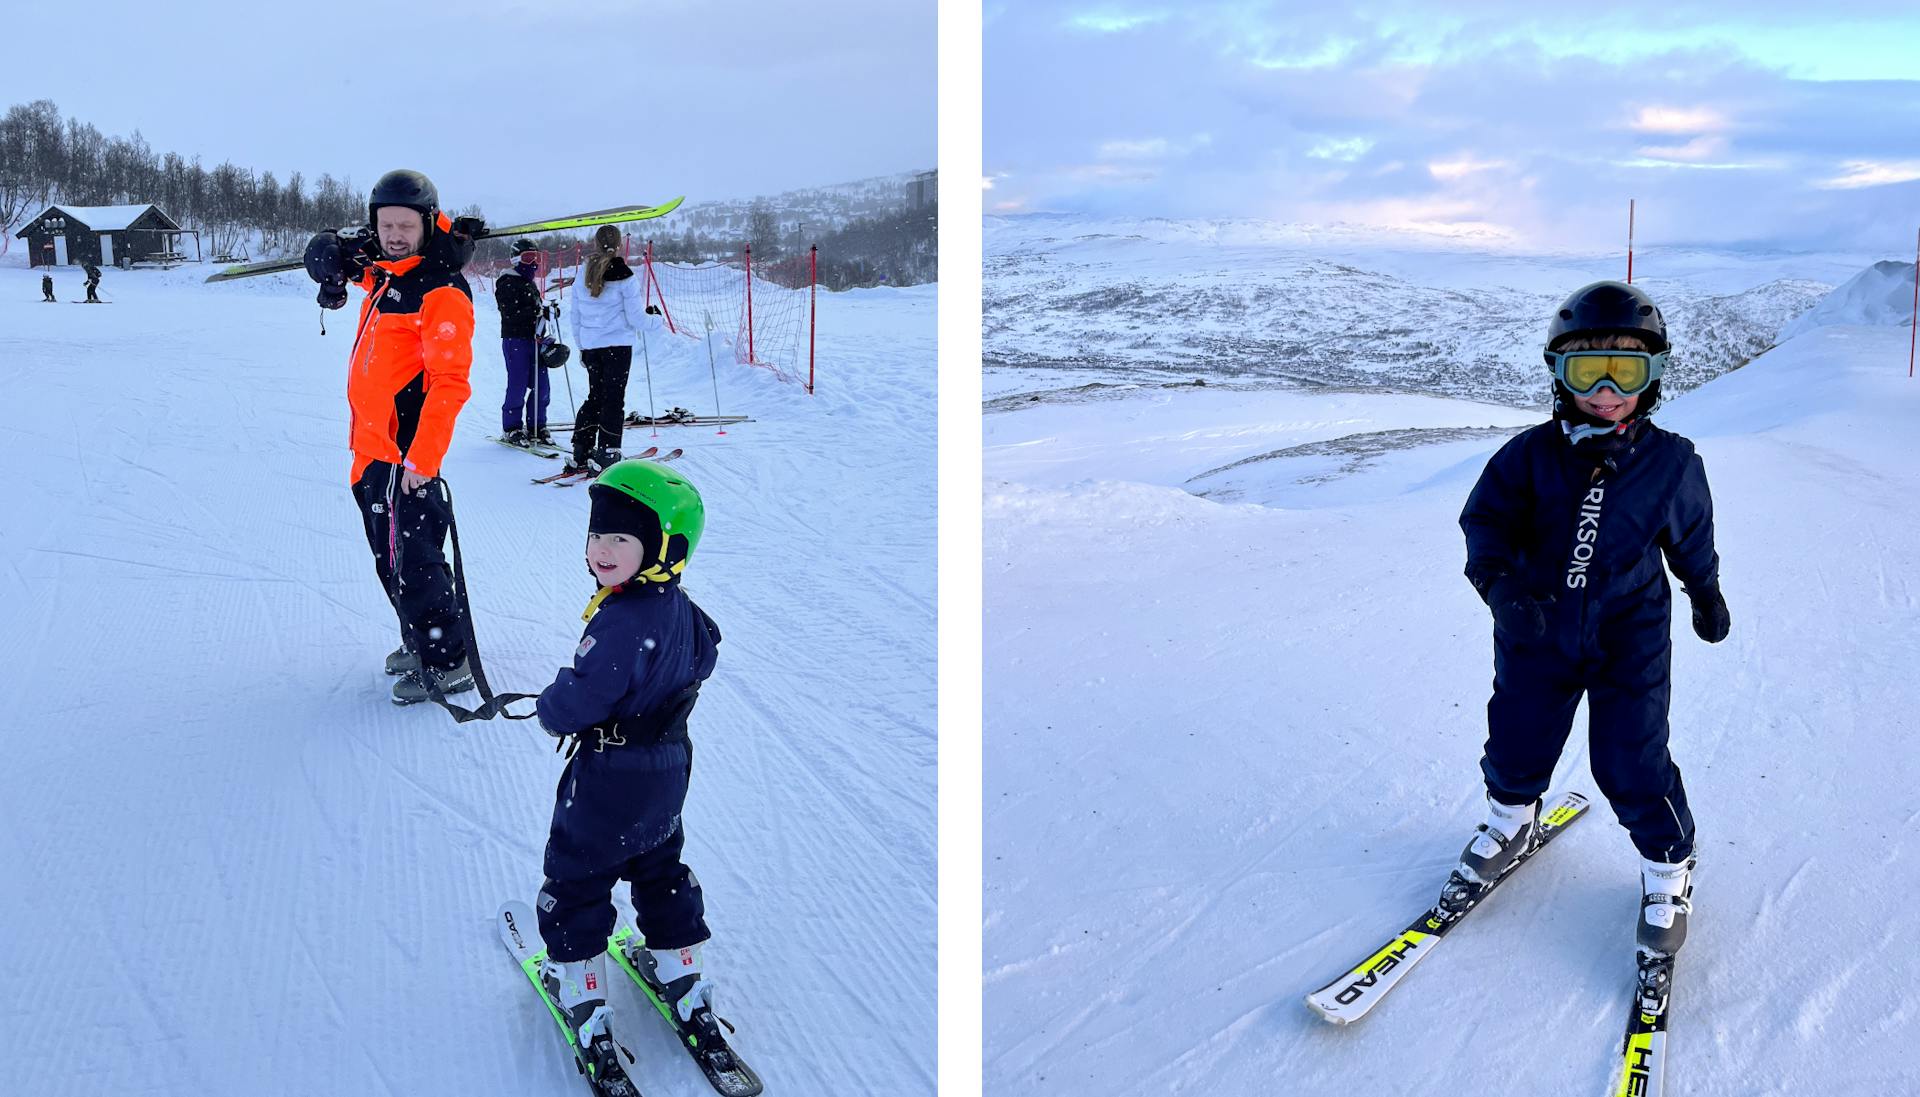 Kids on skis